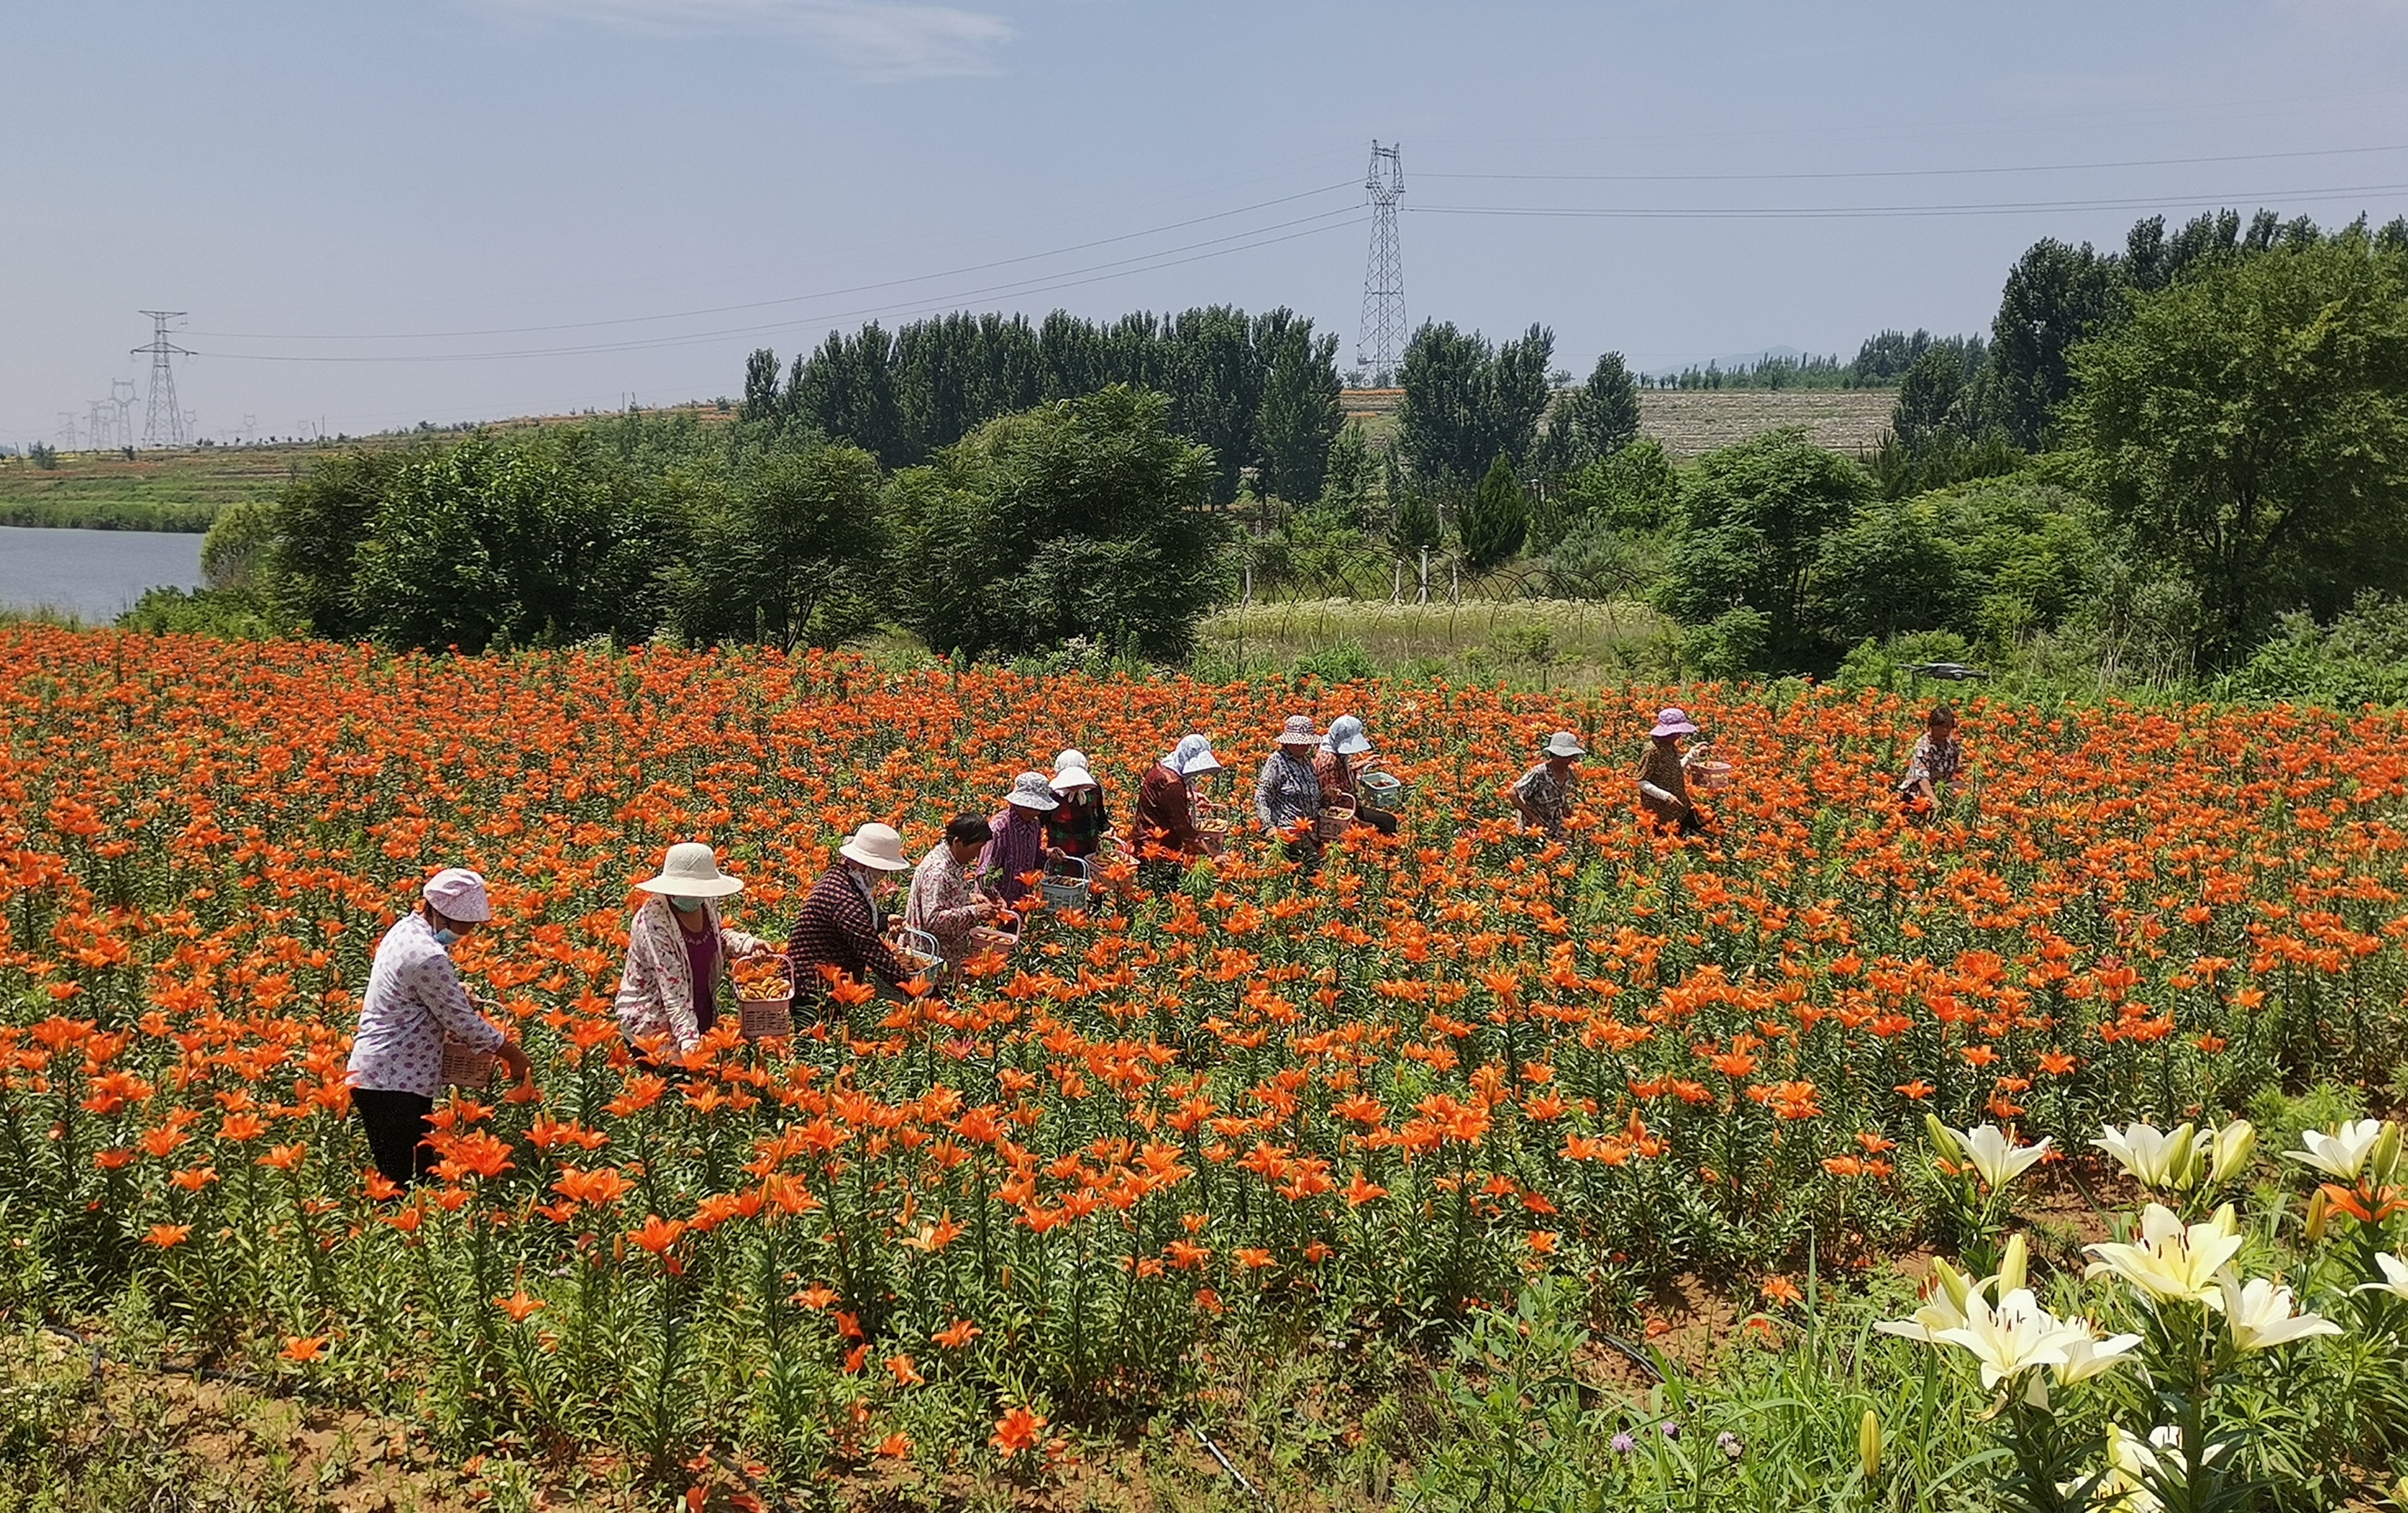 李秀波)6月18日,山东省新泰市羊流百合园内,村民正在采摘百合花